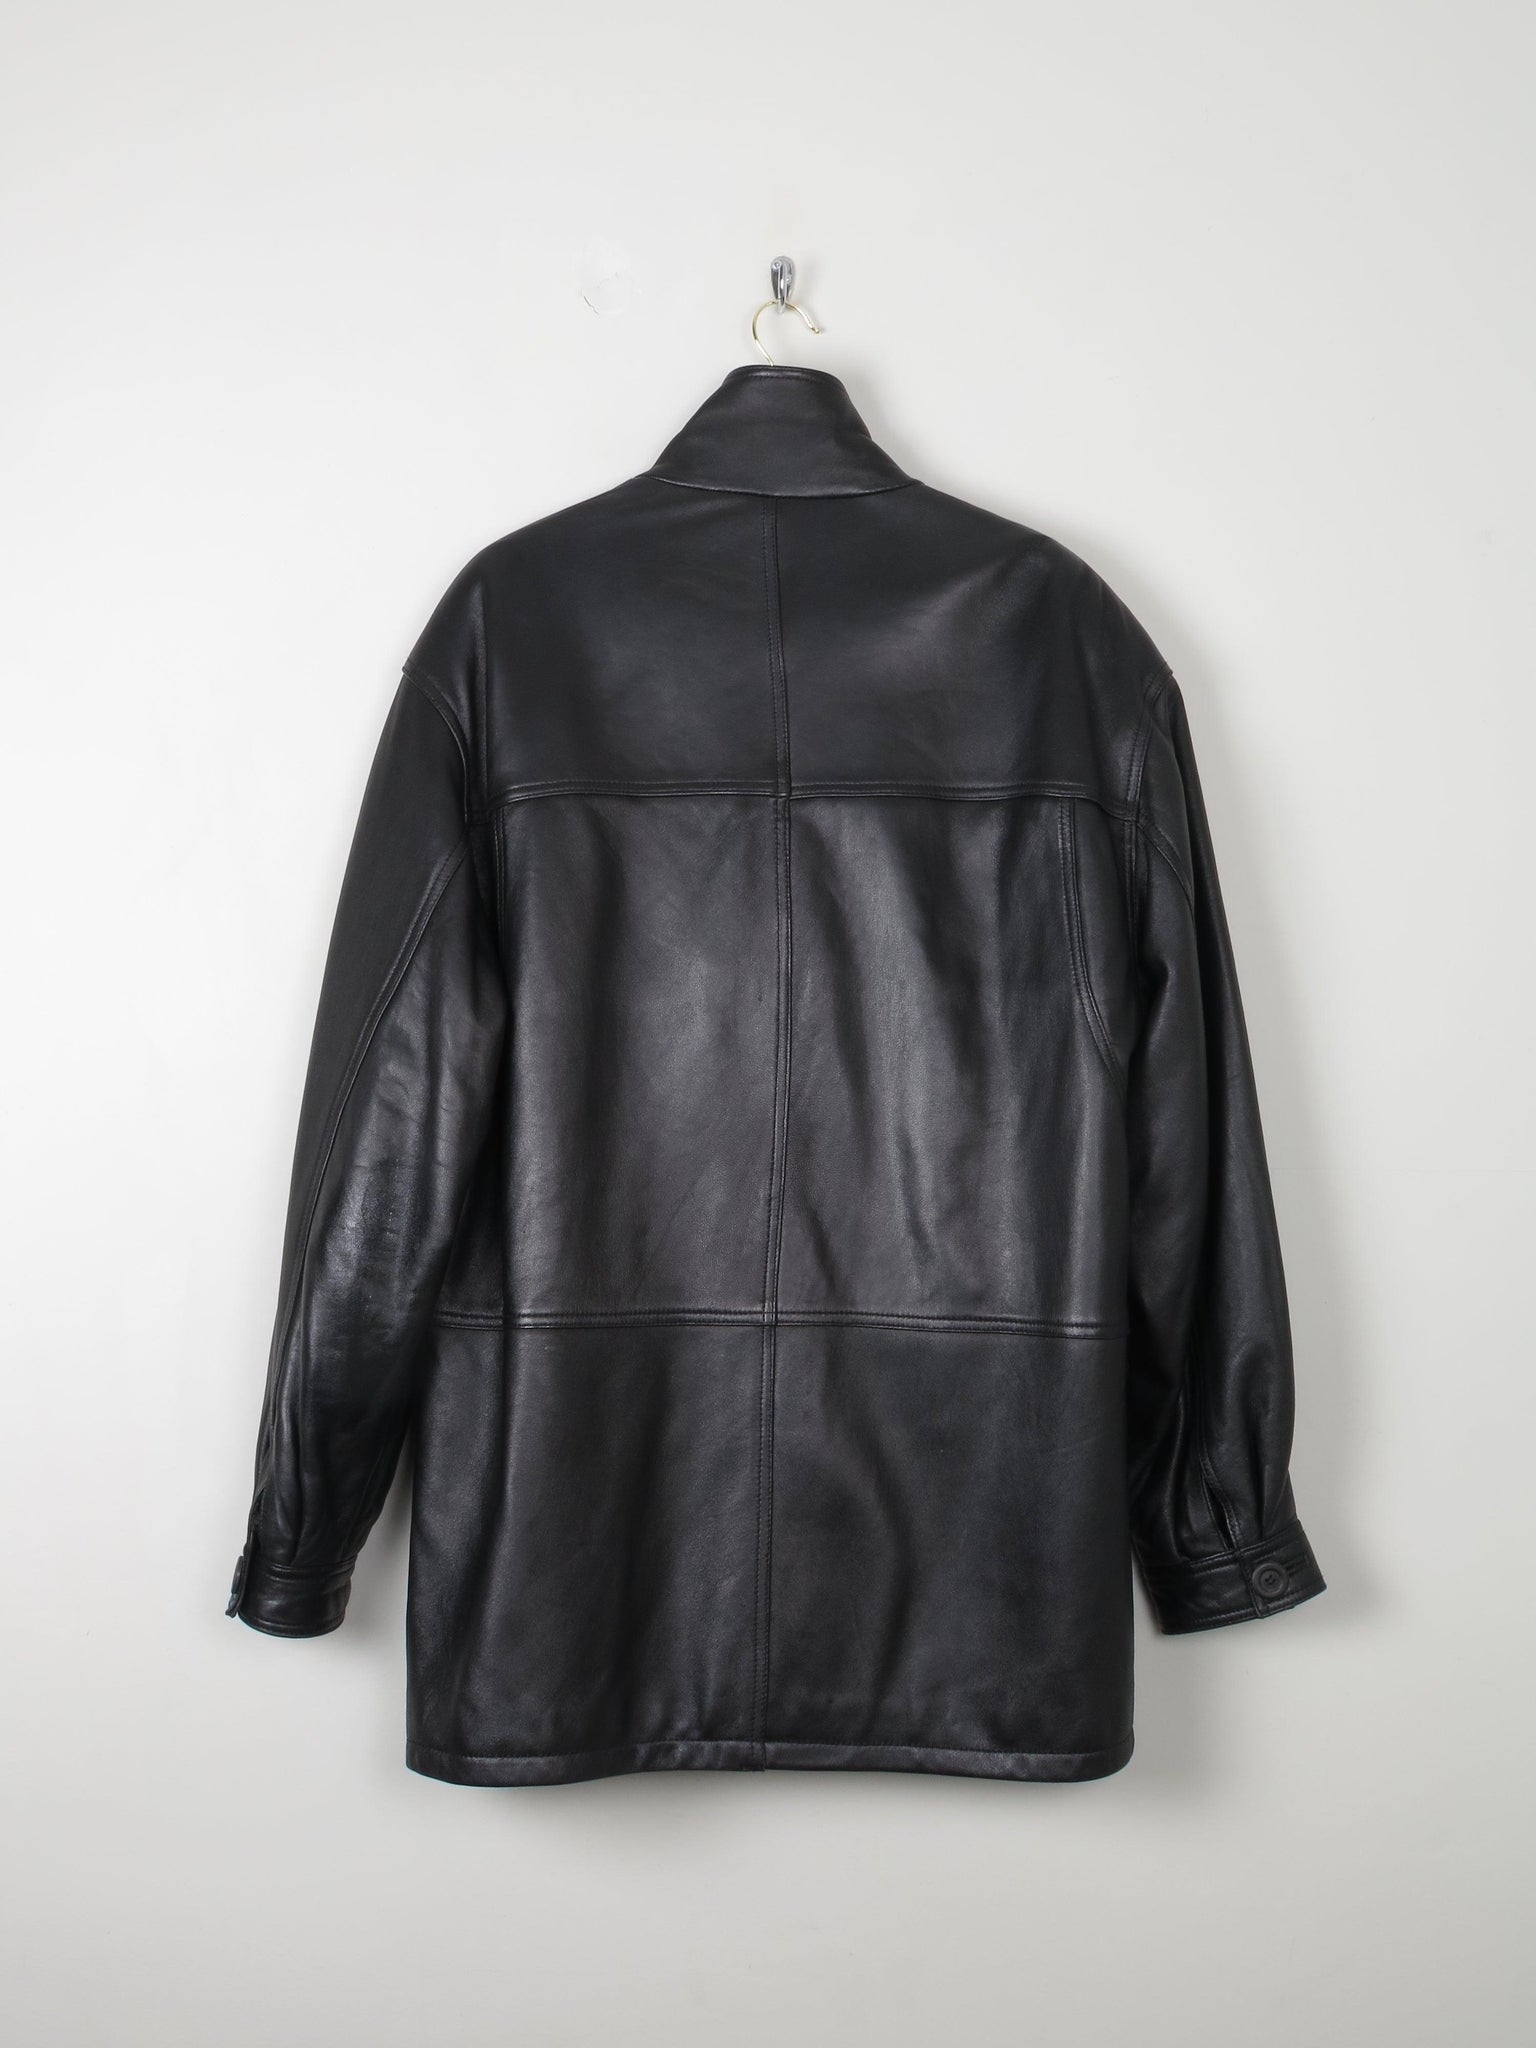 Men's Vintage Leather Jacket Black L - The Harlequin